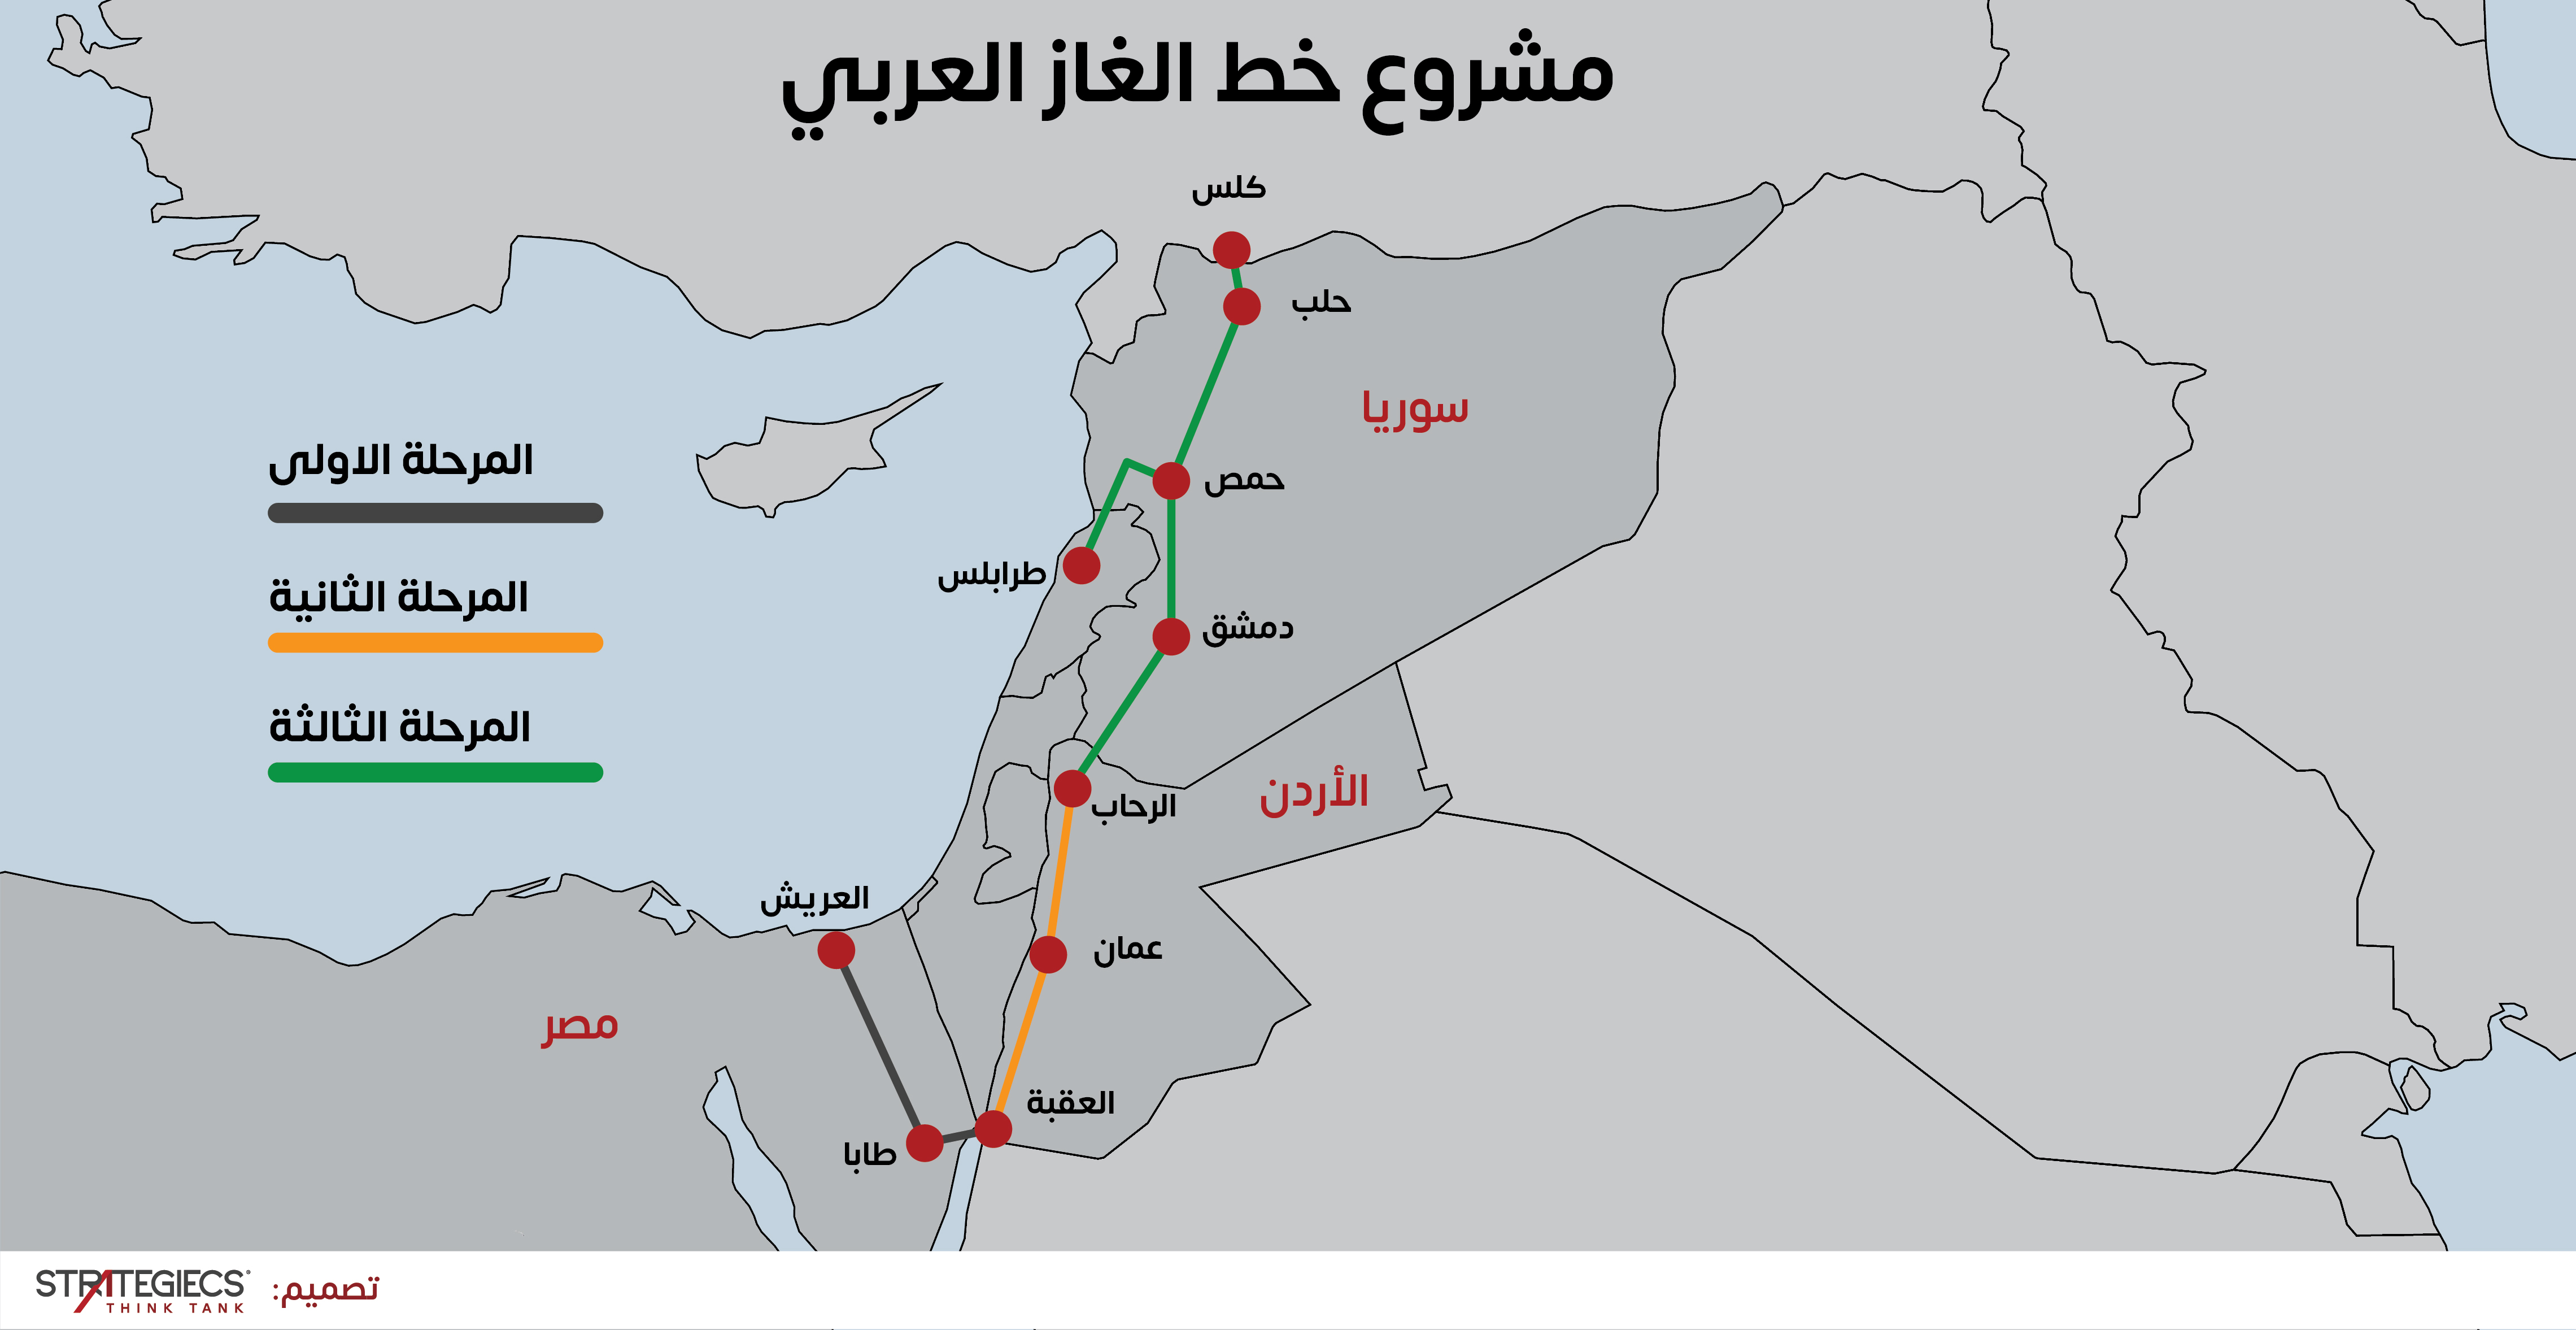 المبادرة-الأردنية-تجاه-سوريا-ستراتيجيكس-map-1-01.jpg